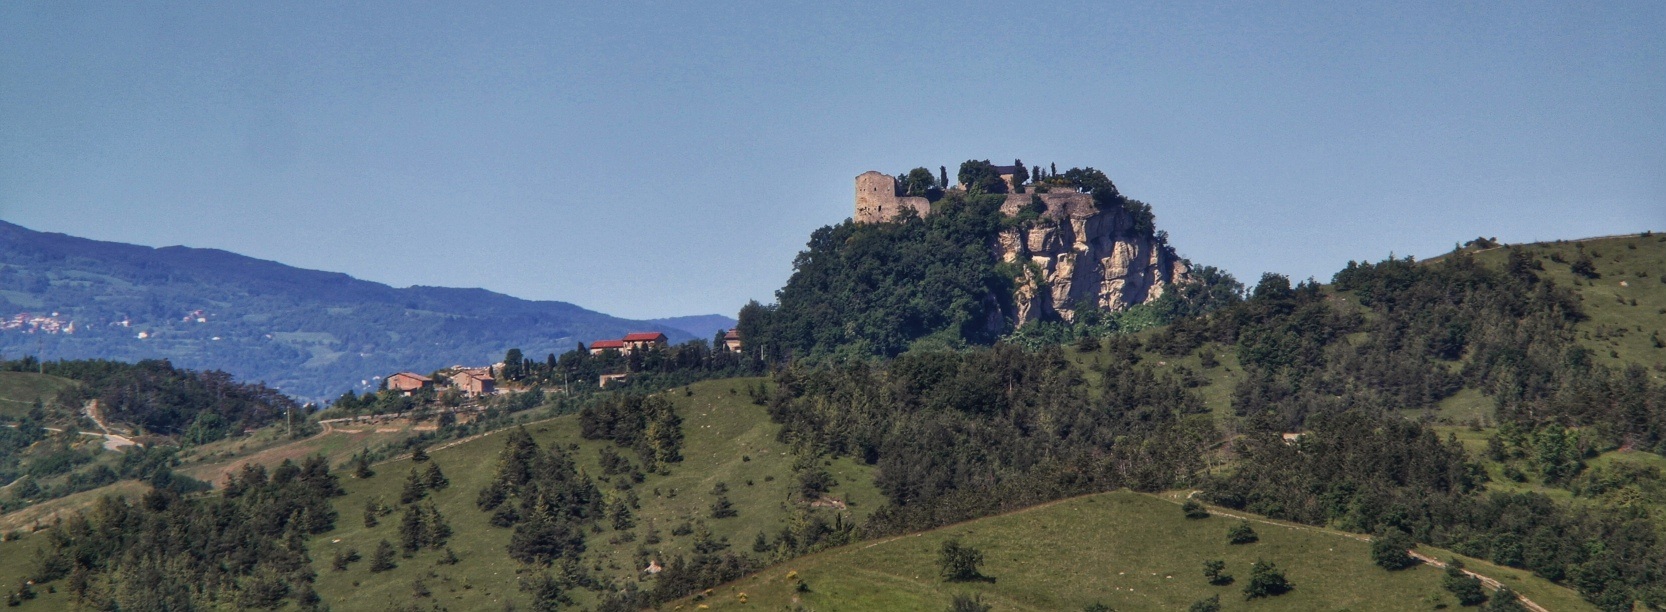 Leg No. 4: from Reggio Emilia to the Castle of Canossa (26.7 km)